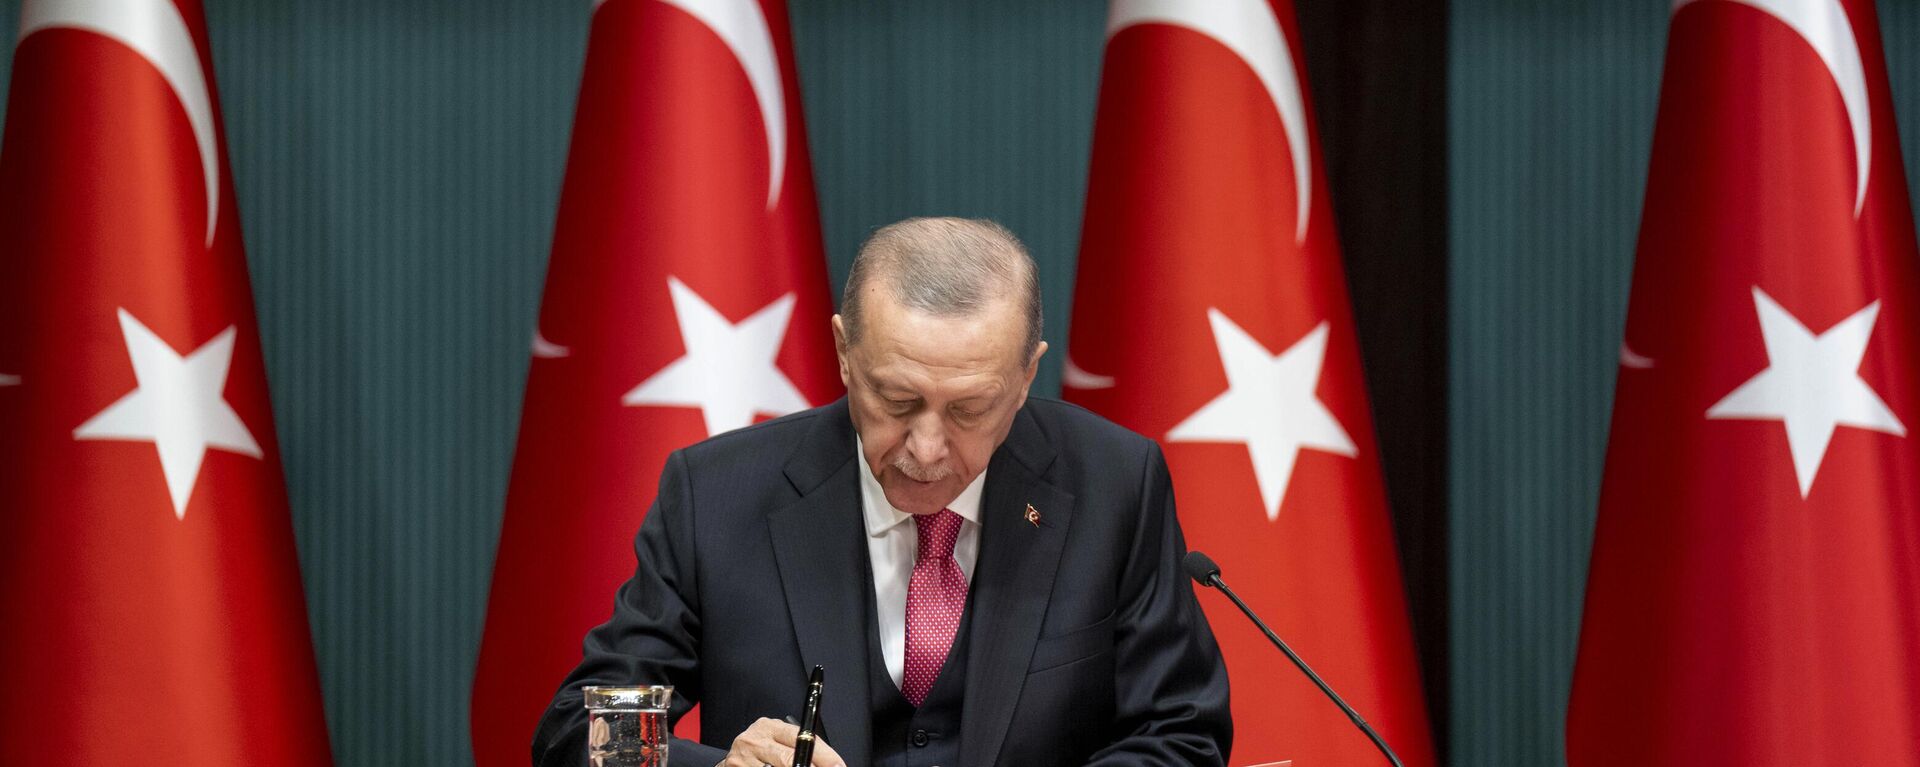 Cumhurbaşkanı Erdoğan seçim kararını imzaladı - Sputnik Türkiye, 1920, 10.03.2023